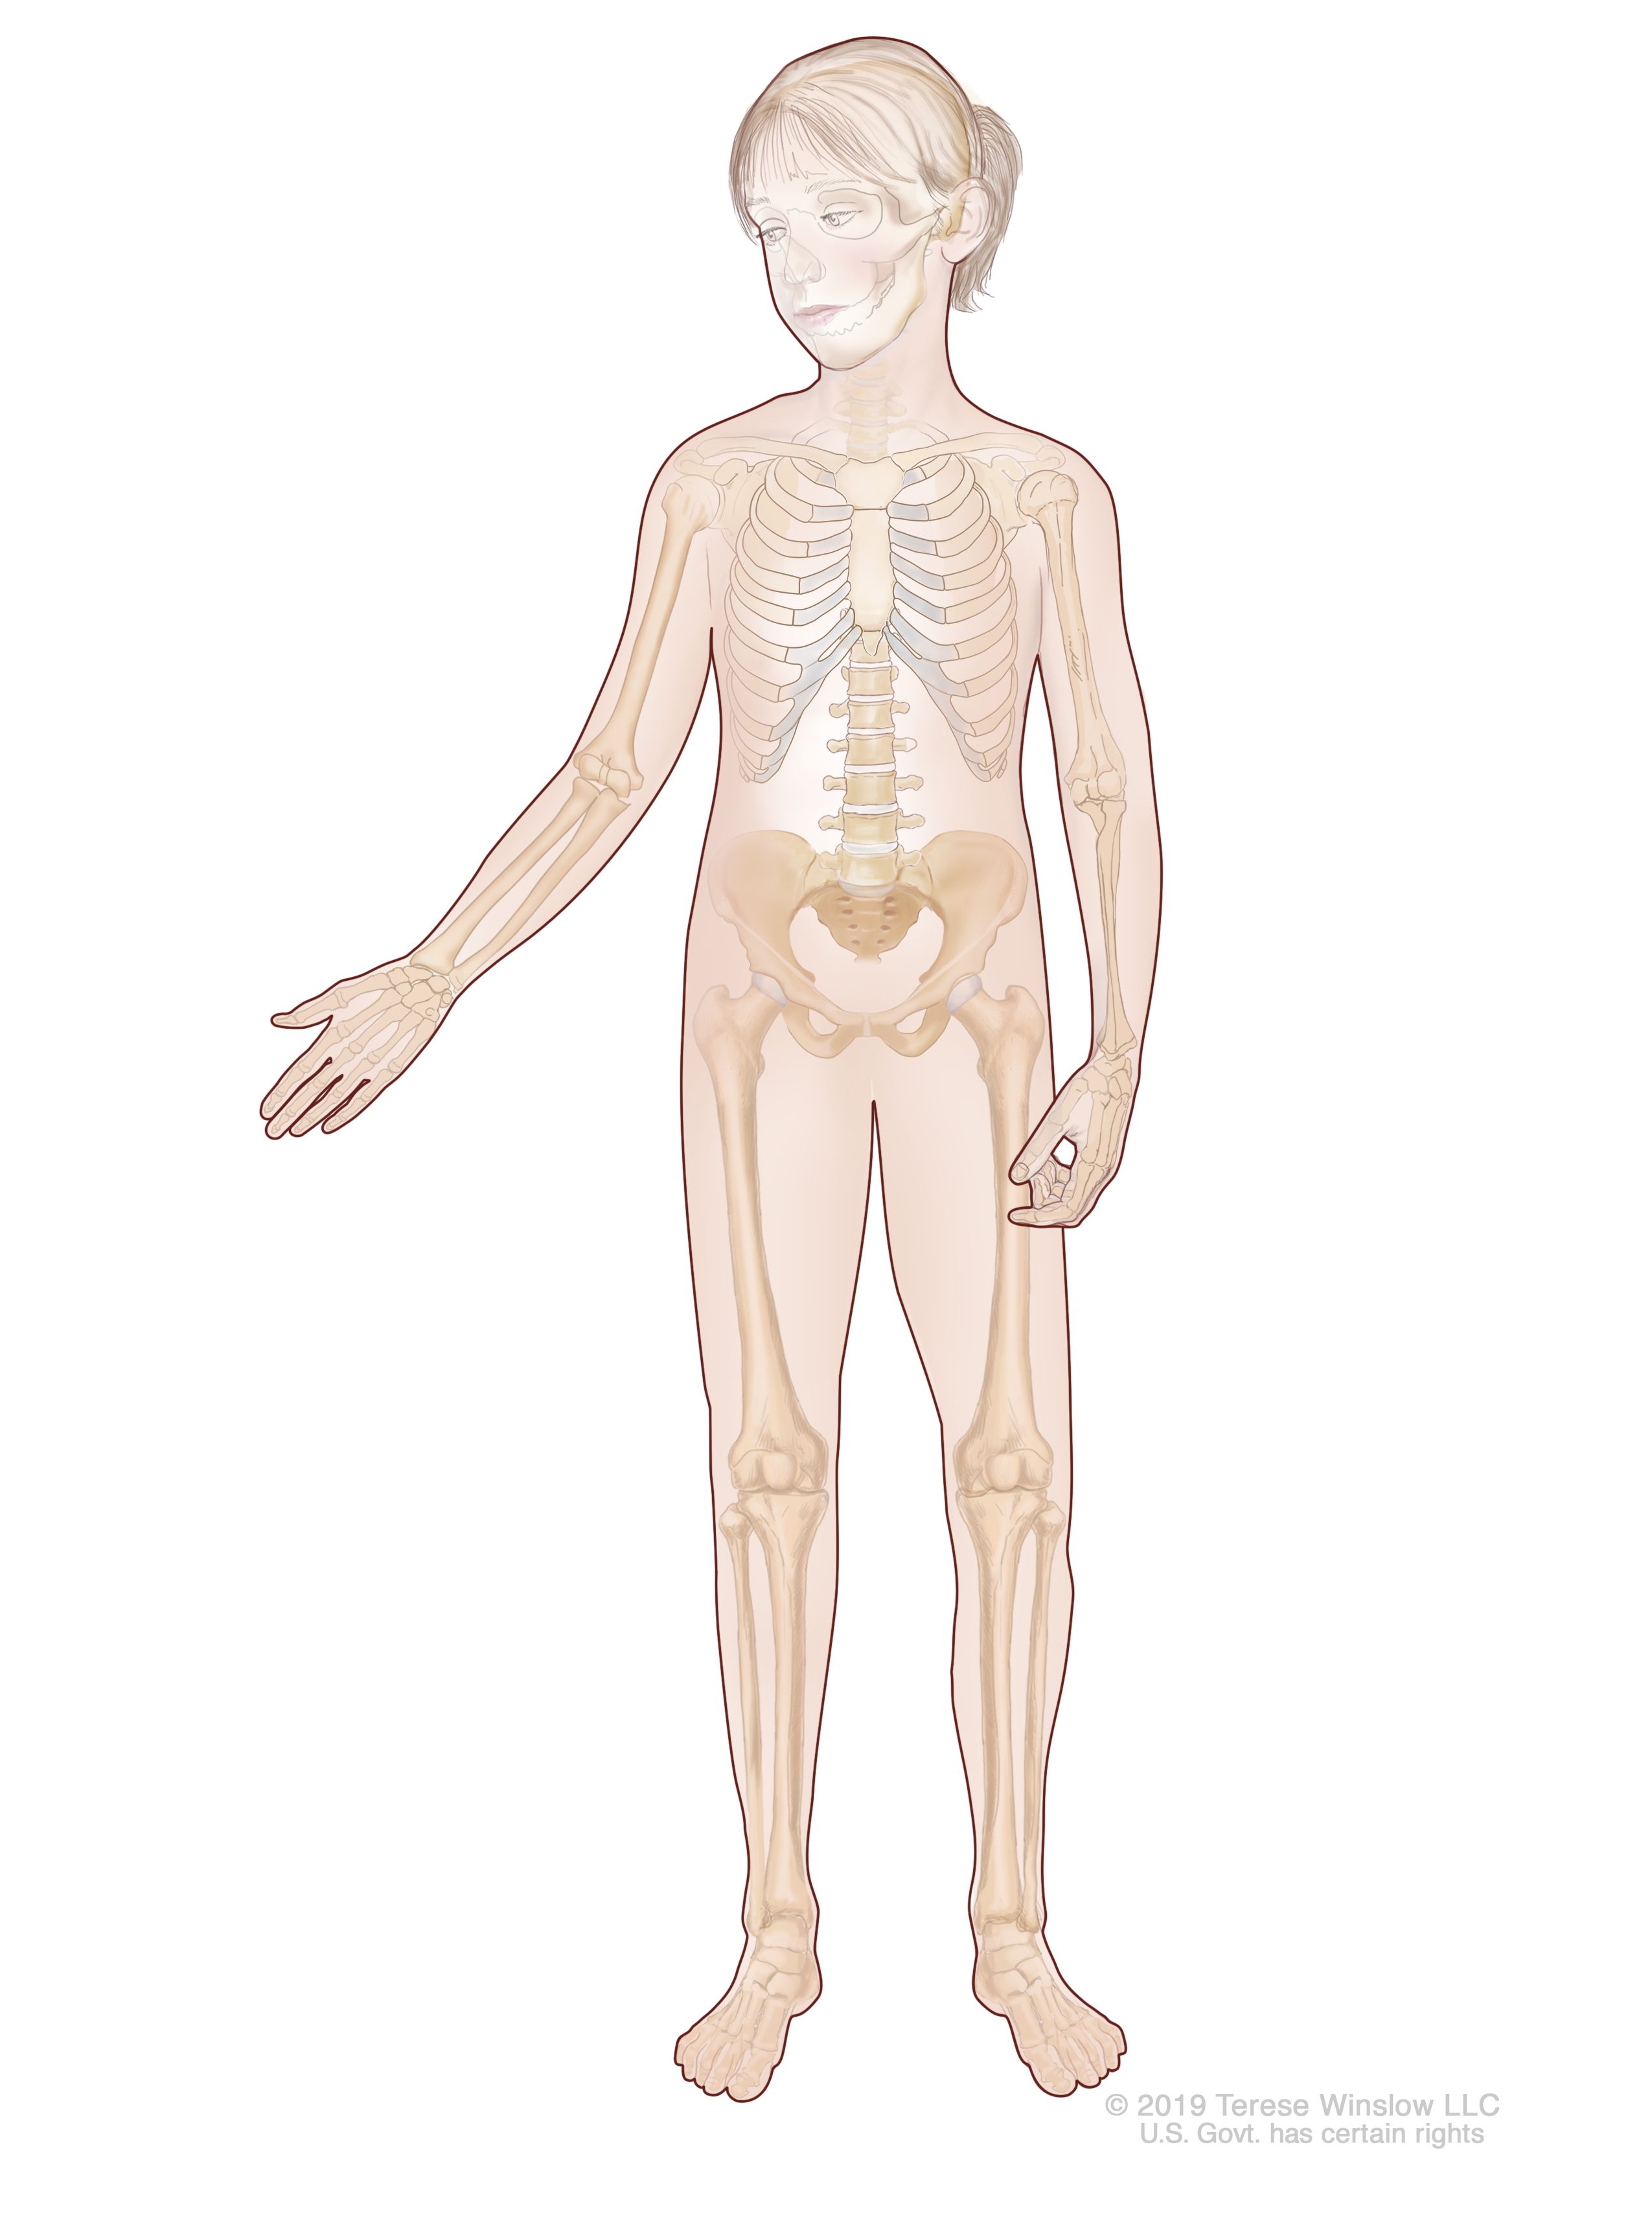 el cuerpo humano y sus organos